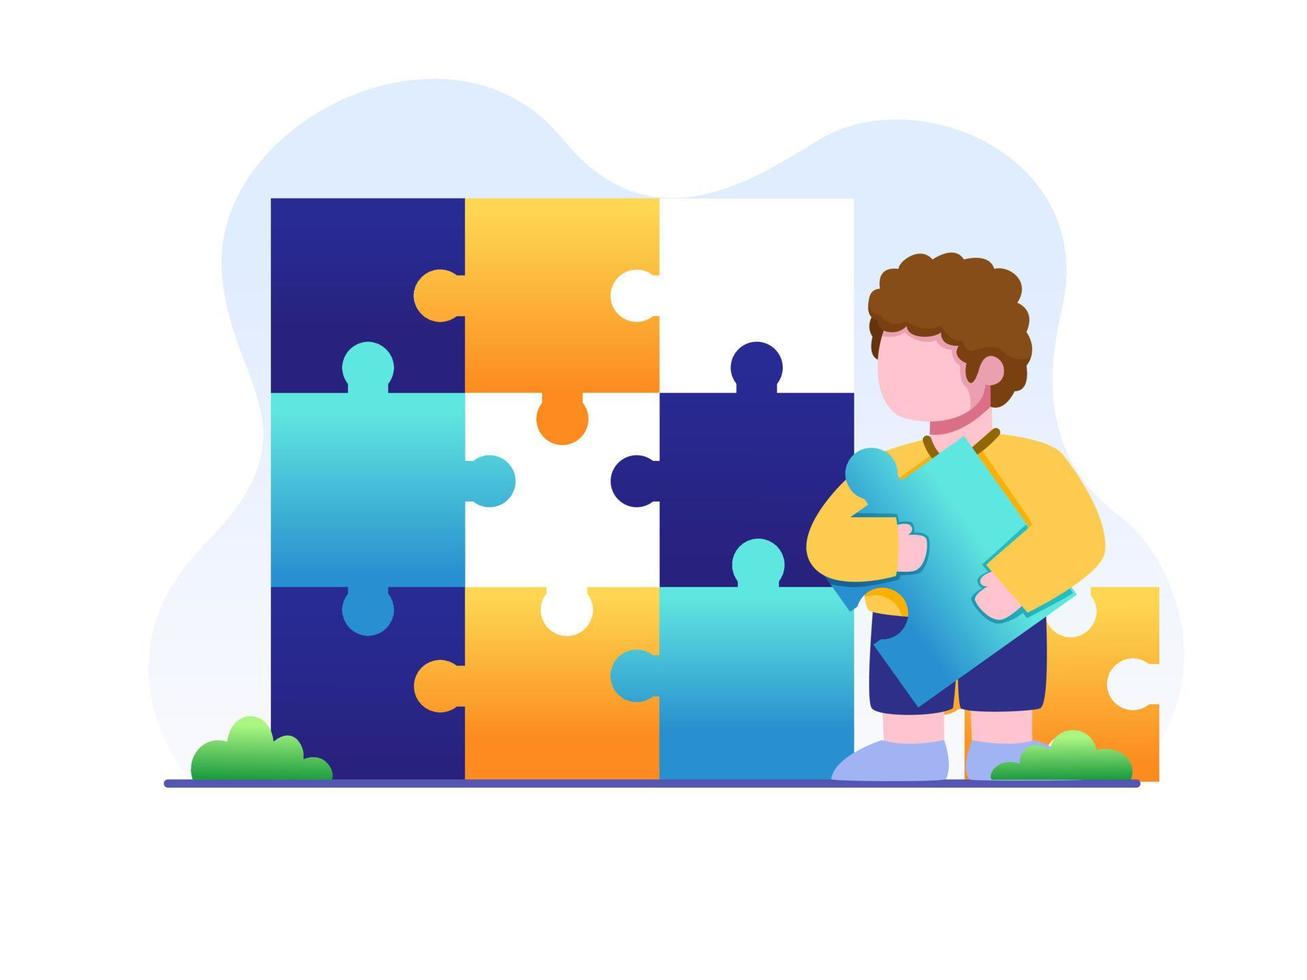 gelukkige kinderen lossen een puzzel op. kleuters die een eenvoudige puzzel spelen. kan worden gebruikt voor web, banner, flyer, presentatie, enz. vector